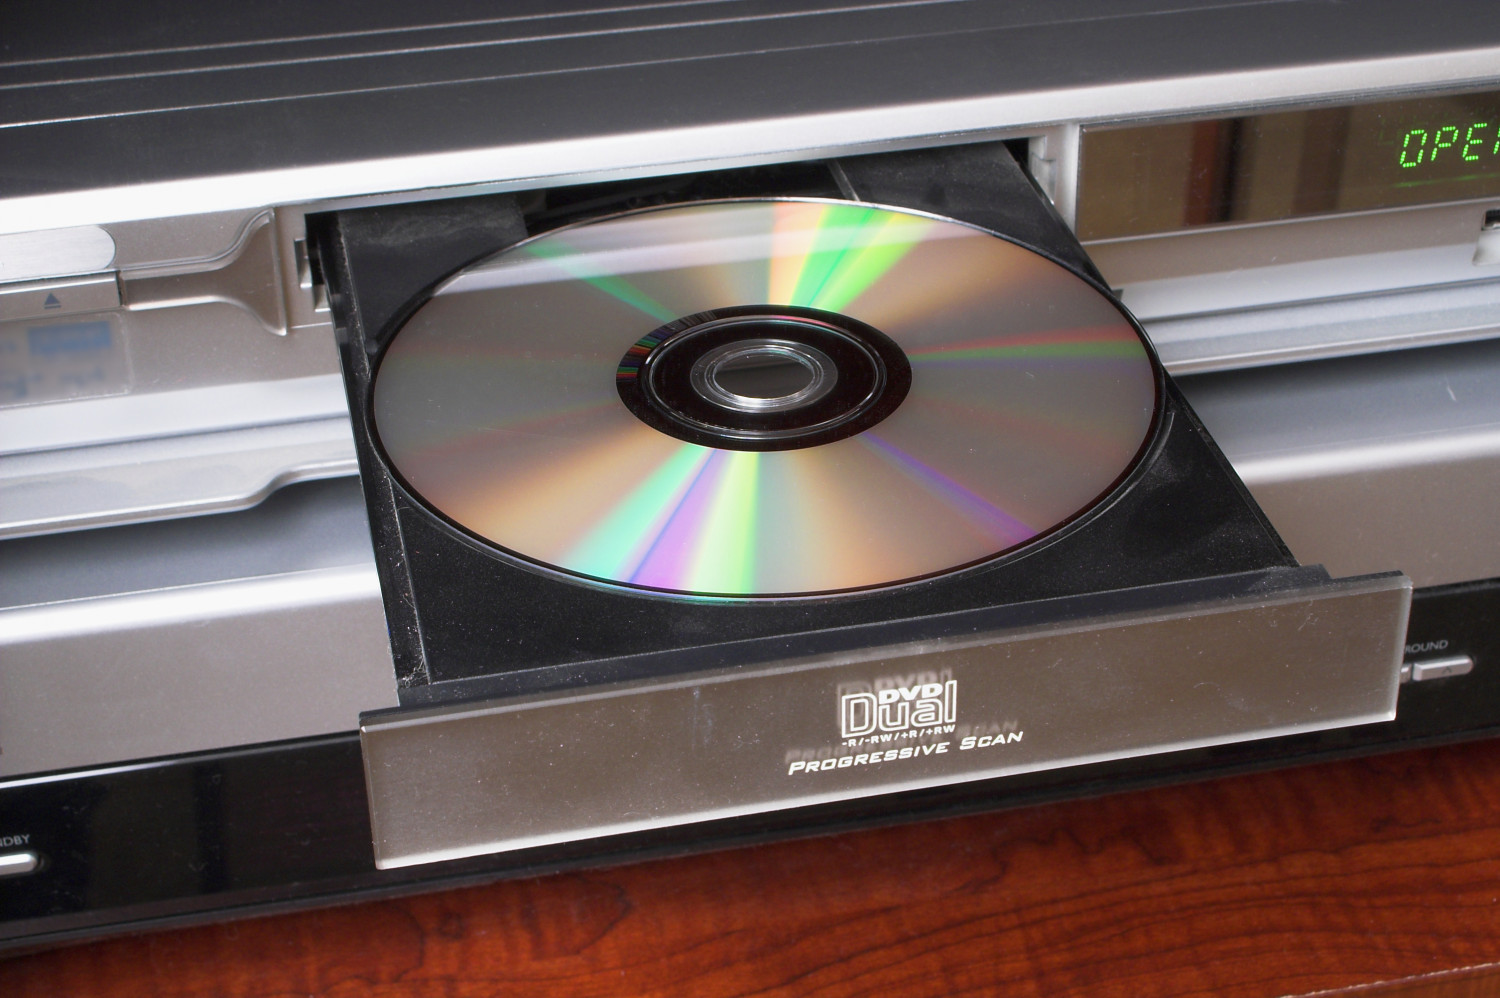 Empirisch De kamer schoonmaken Klaar Watch Movies In Style With The Best DVD Player of 2023